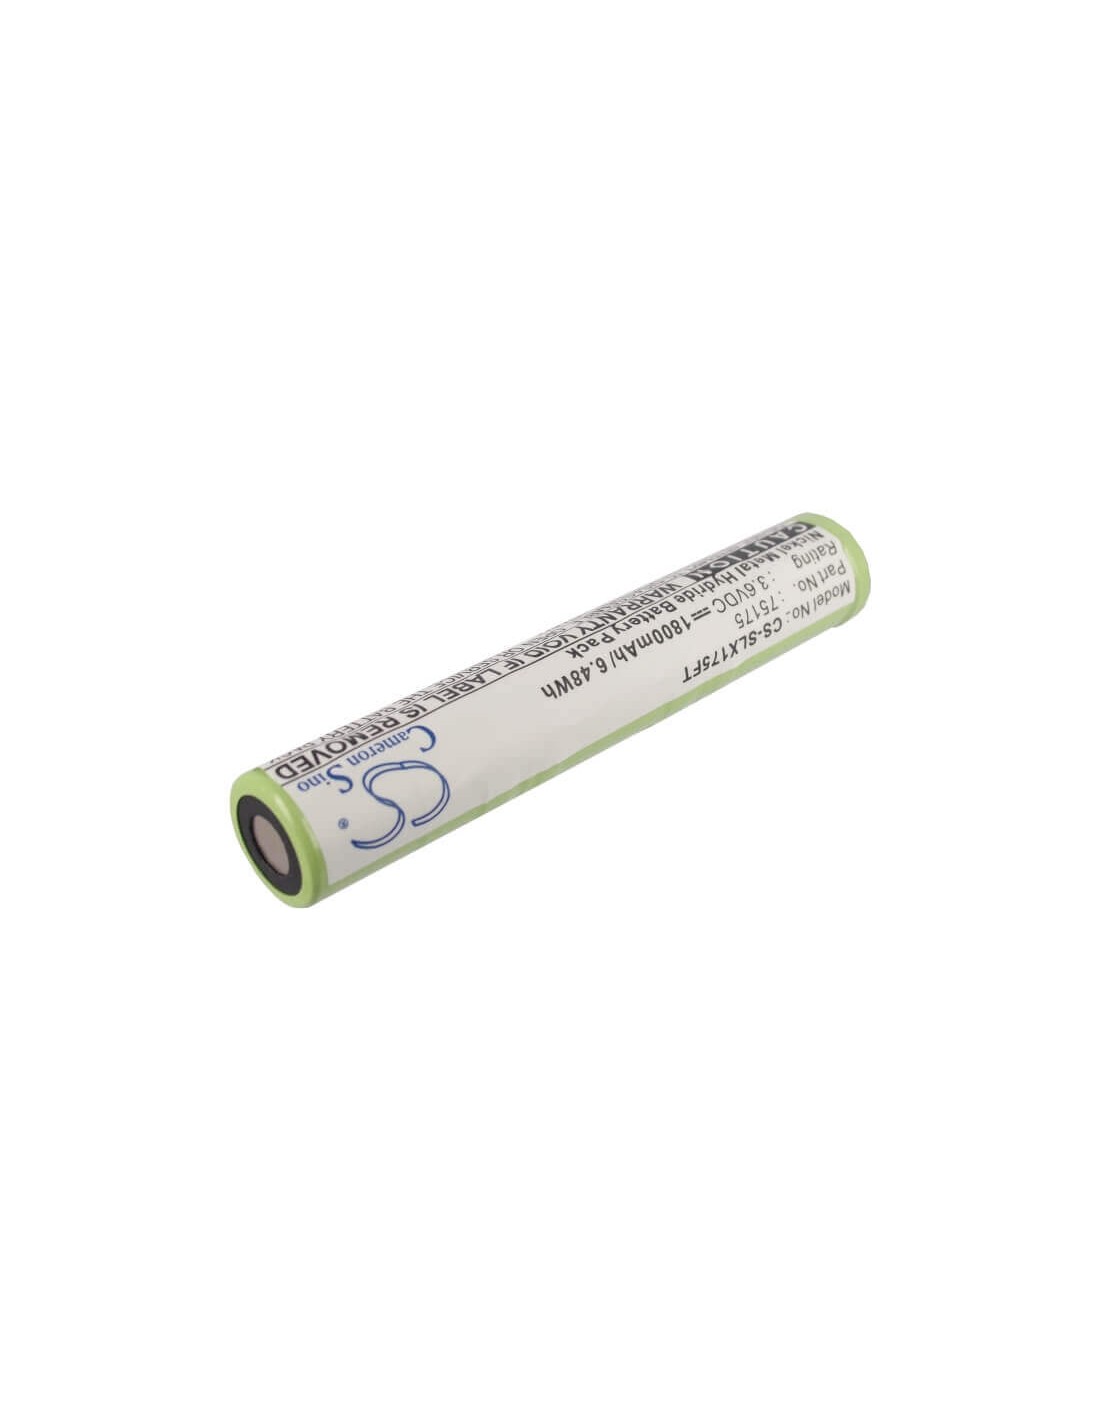 Battery for Streamlight & Pelican M9 3.6V, 1800mAh - 6.48Wh